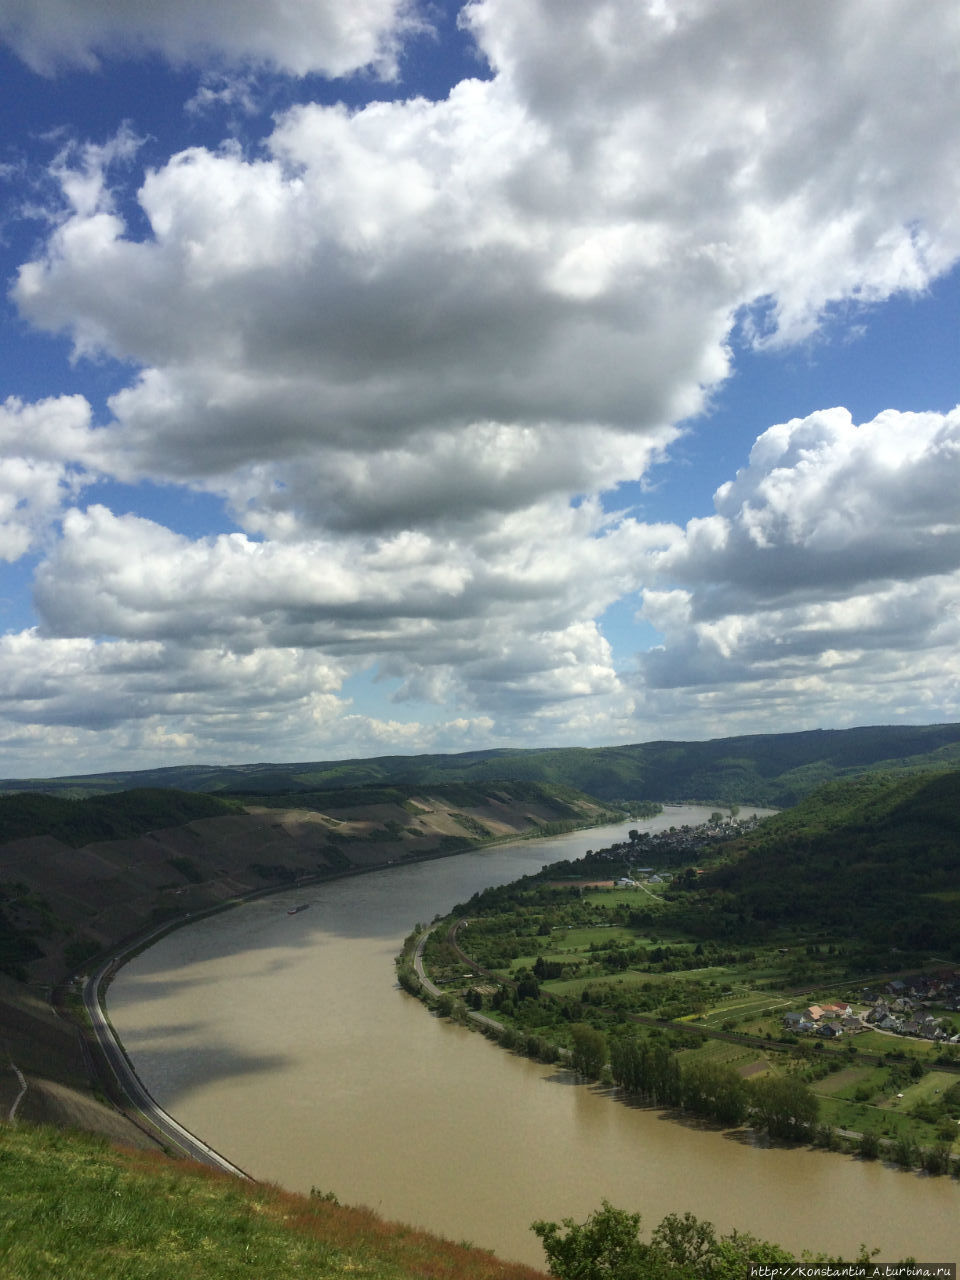 Клубничное вино и вид на Рейн с высоты птичьего полета. Боппард, Германия